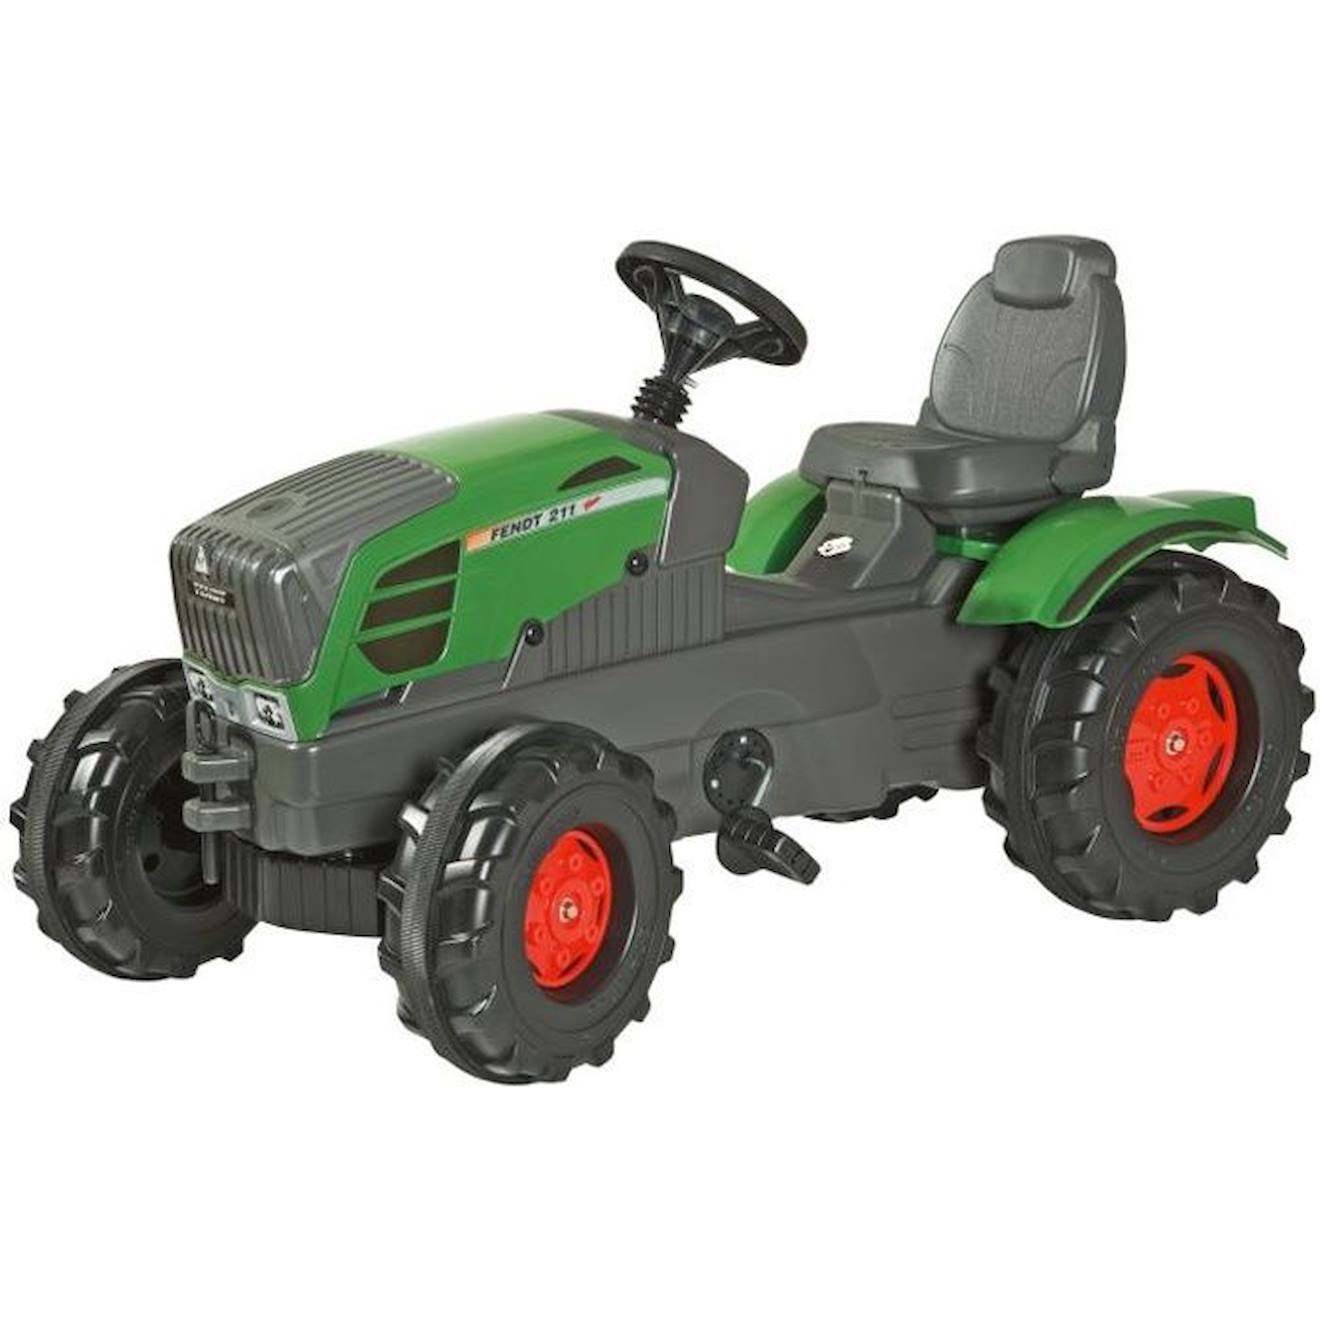 Tracteur À Pédales Fendt Vario 211 Rolly Farmtrac Pour Enfant De 3 Ans Et Plus - Vert Vert